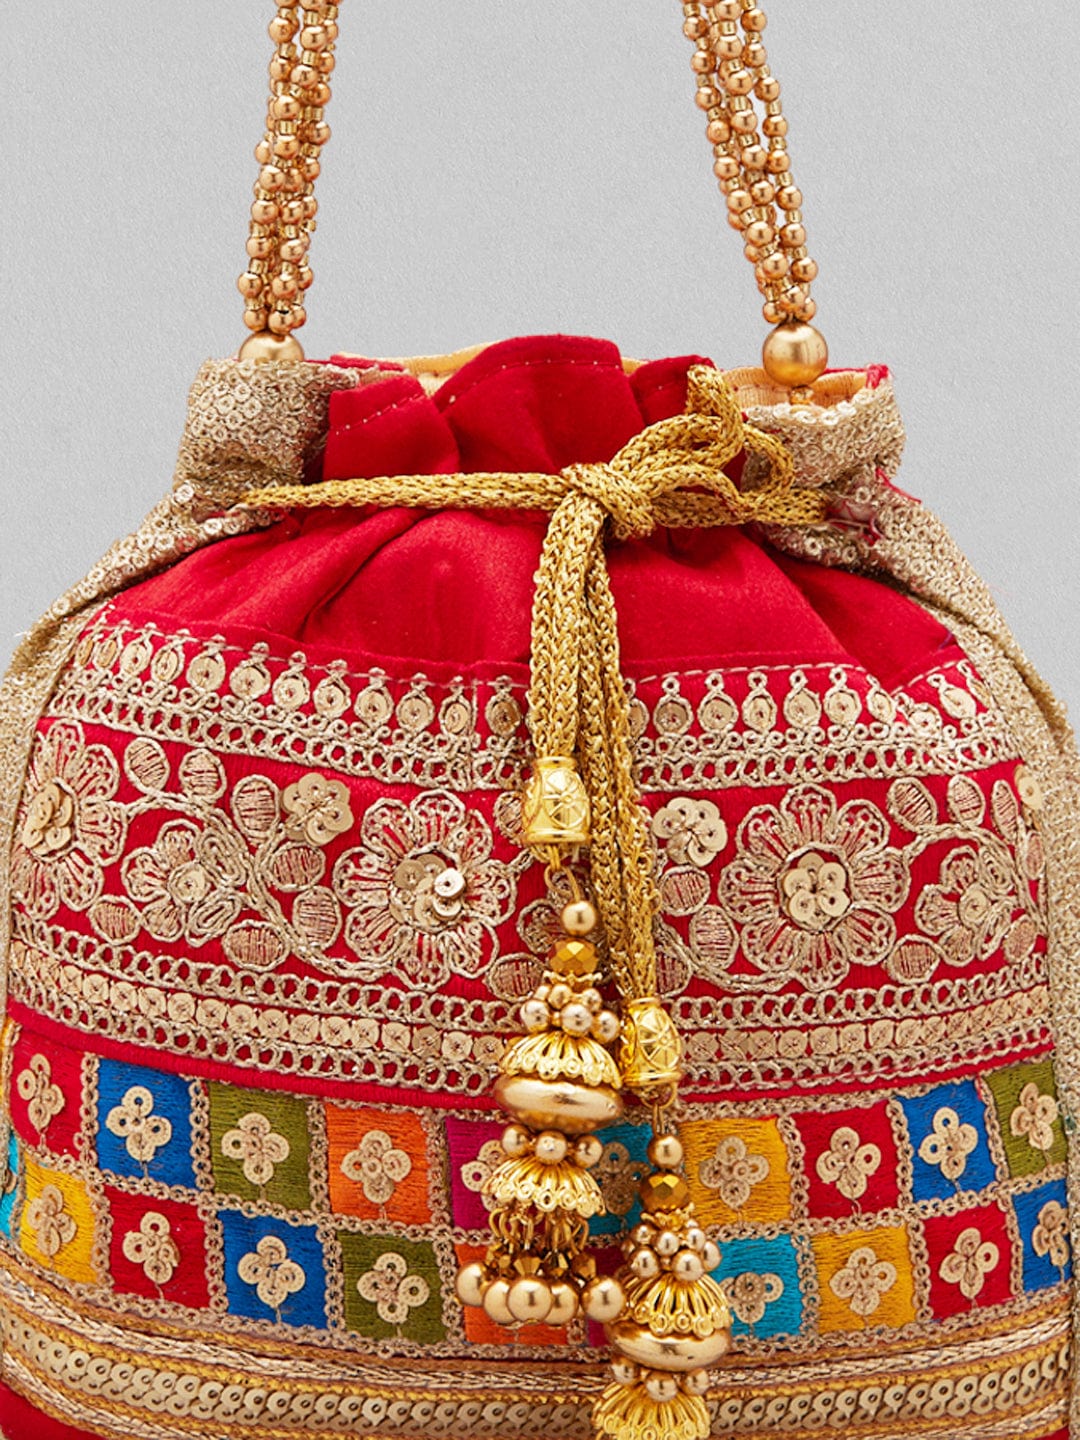 ALARION Womens Purses and Handbags Shoulder Bag Ladies Designer Satchel  Messenger Tote Bag, 1-cpurple, Medium price in Saudi Arabia | Amazon Saudi  Arabia | kanbkam